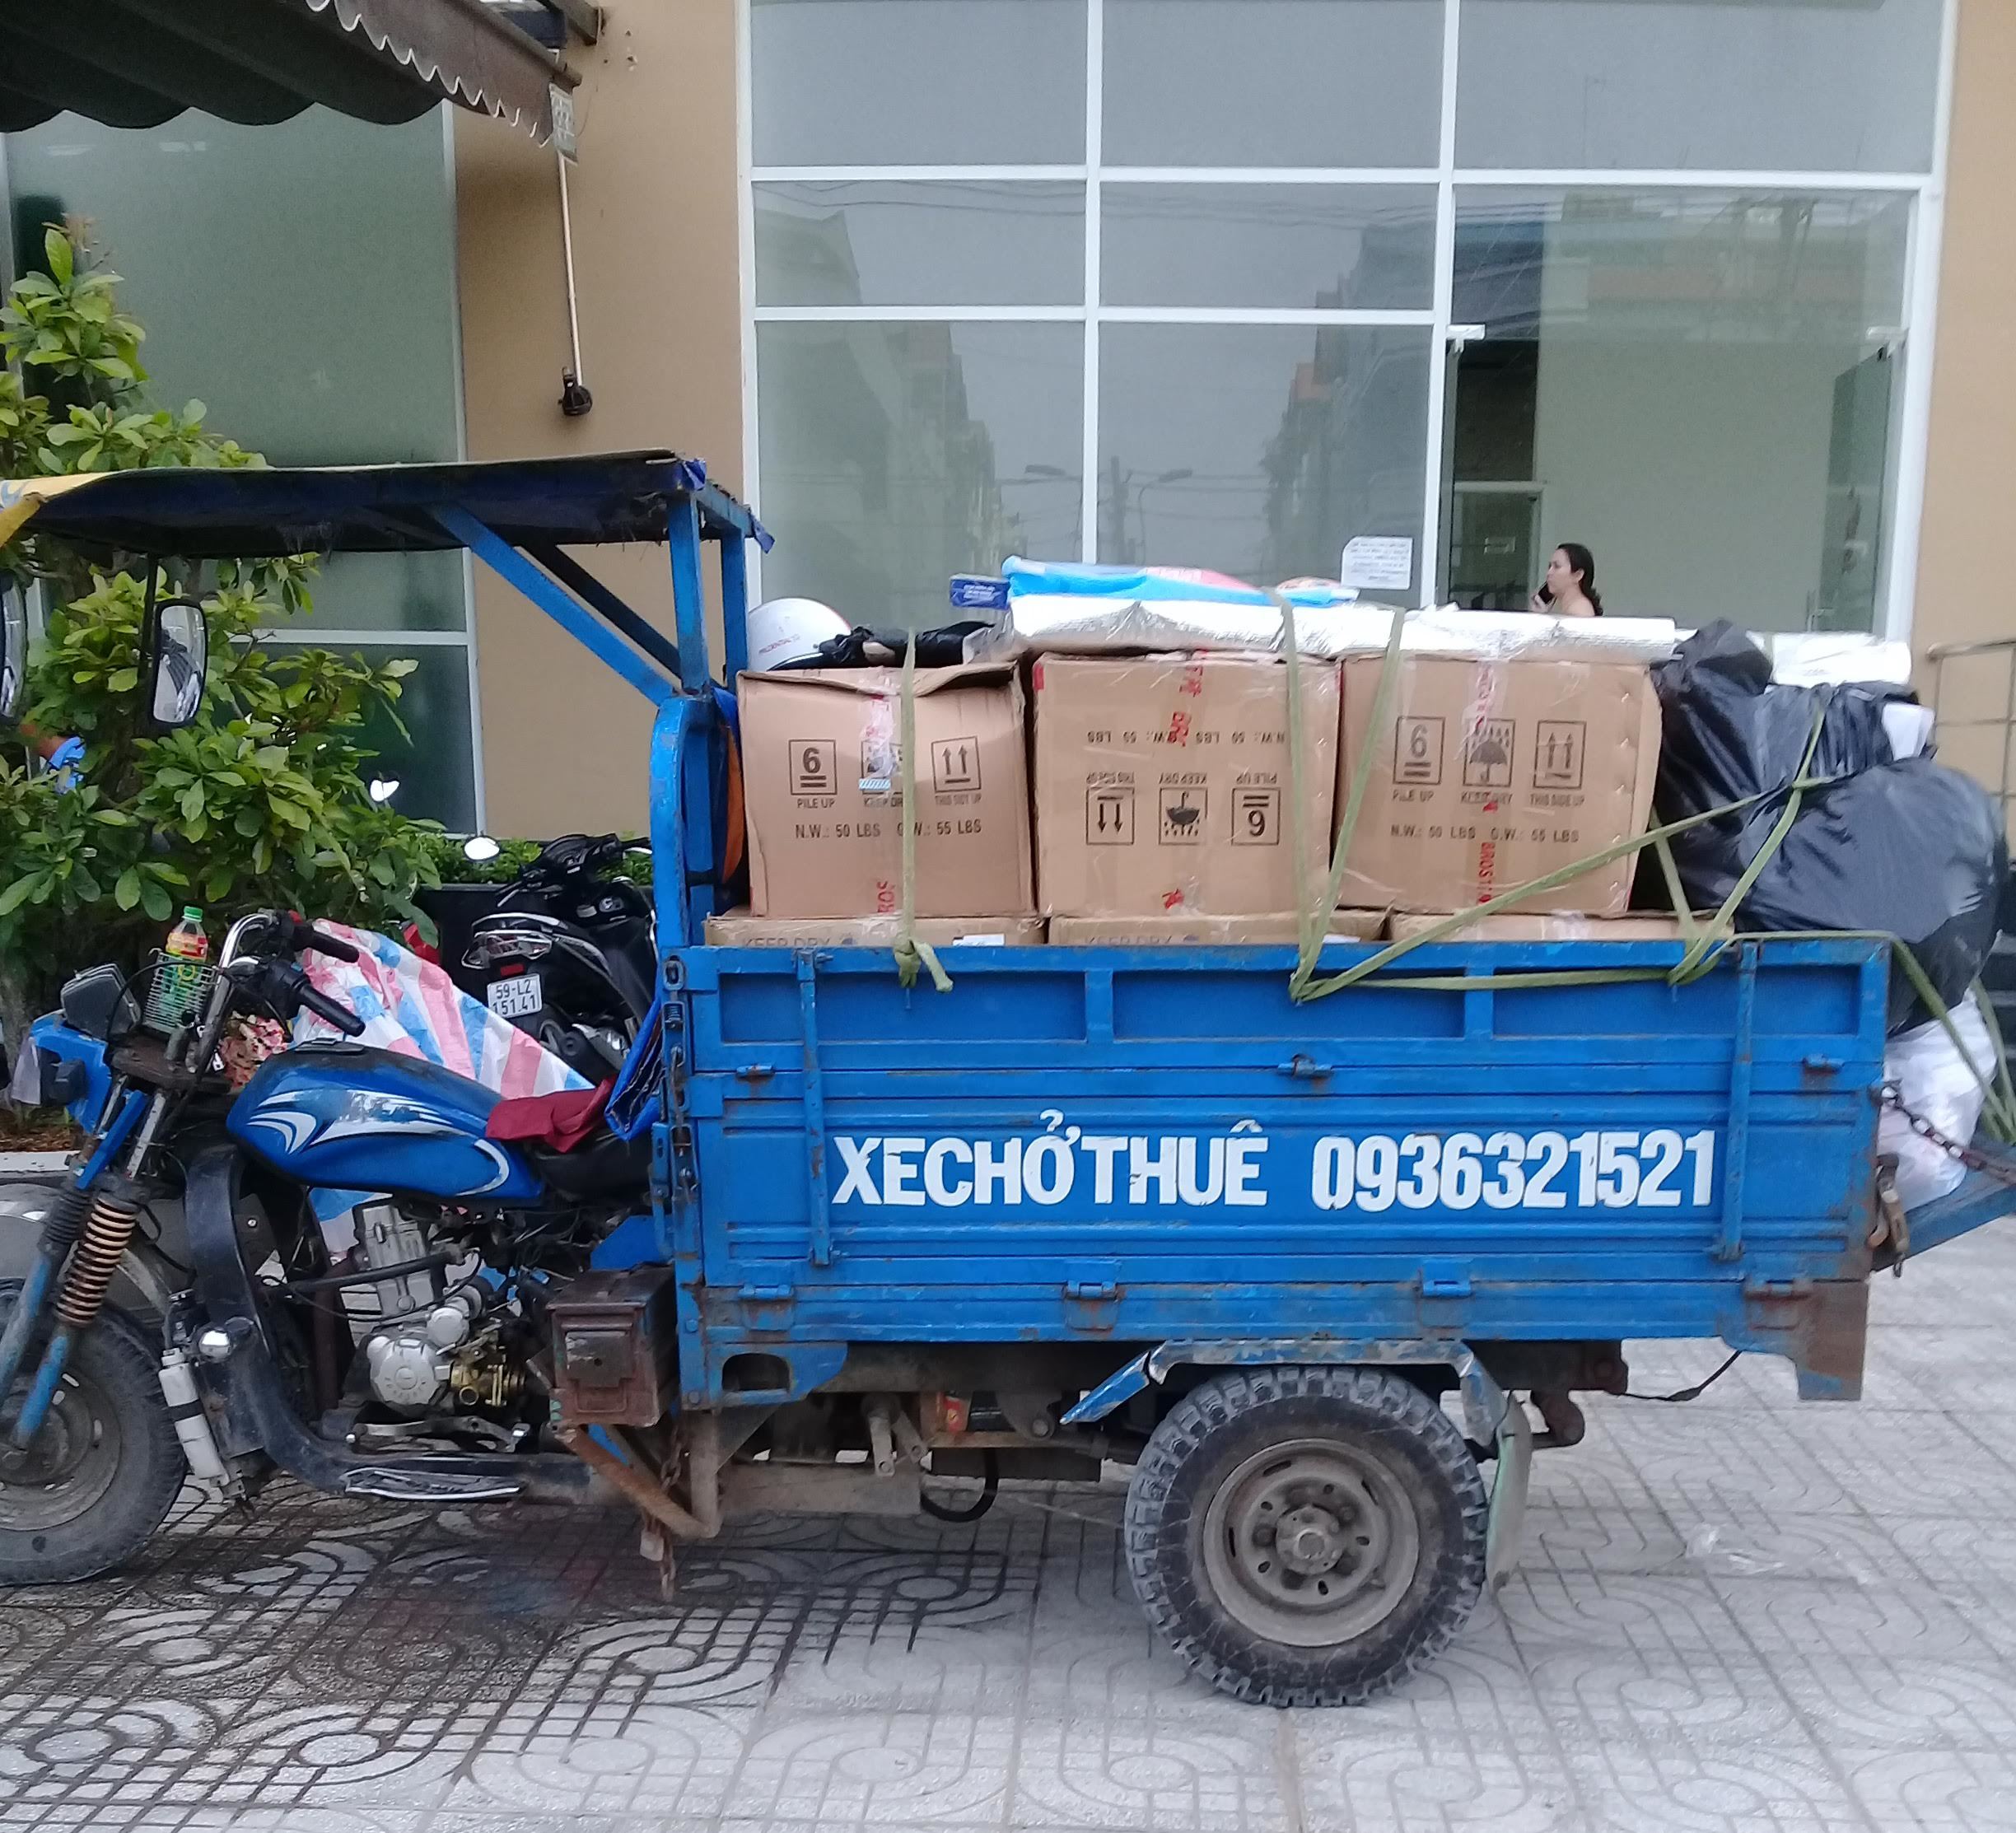  Dịch vụ xe ba gác chở hàng thuê quận Tân Bình